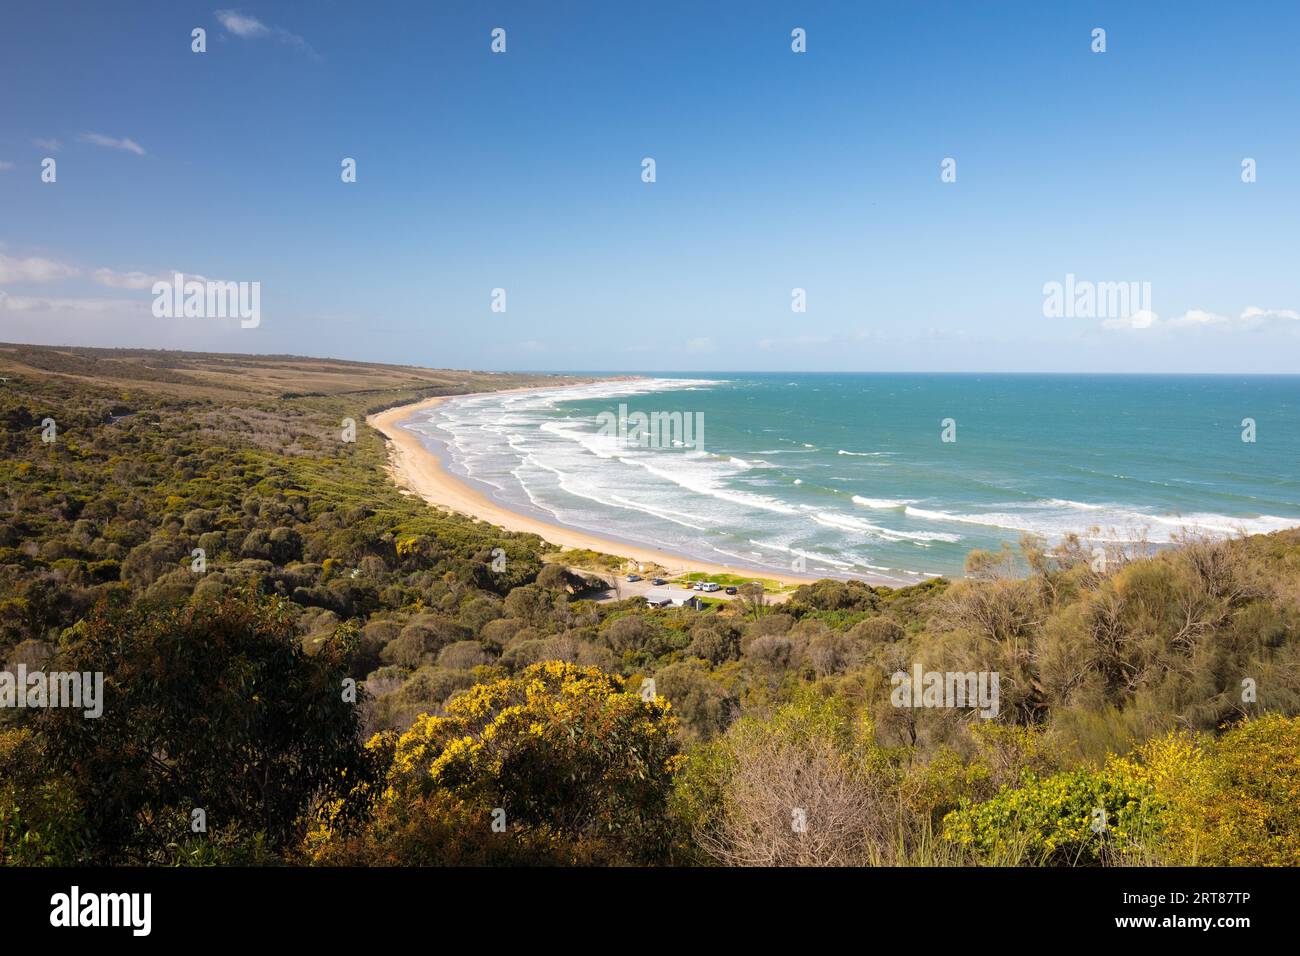 Der berühmte Urquhart Bluff Aussichtspunkt auf der Great Ocean Rd mit Blick auf den Strand von Guvvos in der Nähe von Aireys Inlet in Victoria, Australien Stockfoto